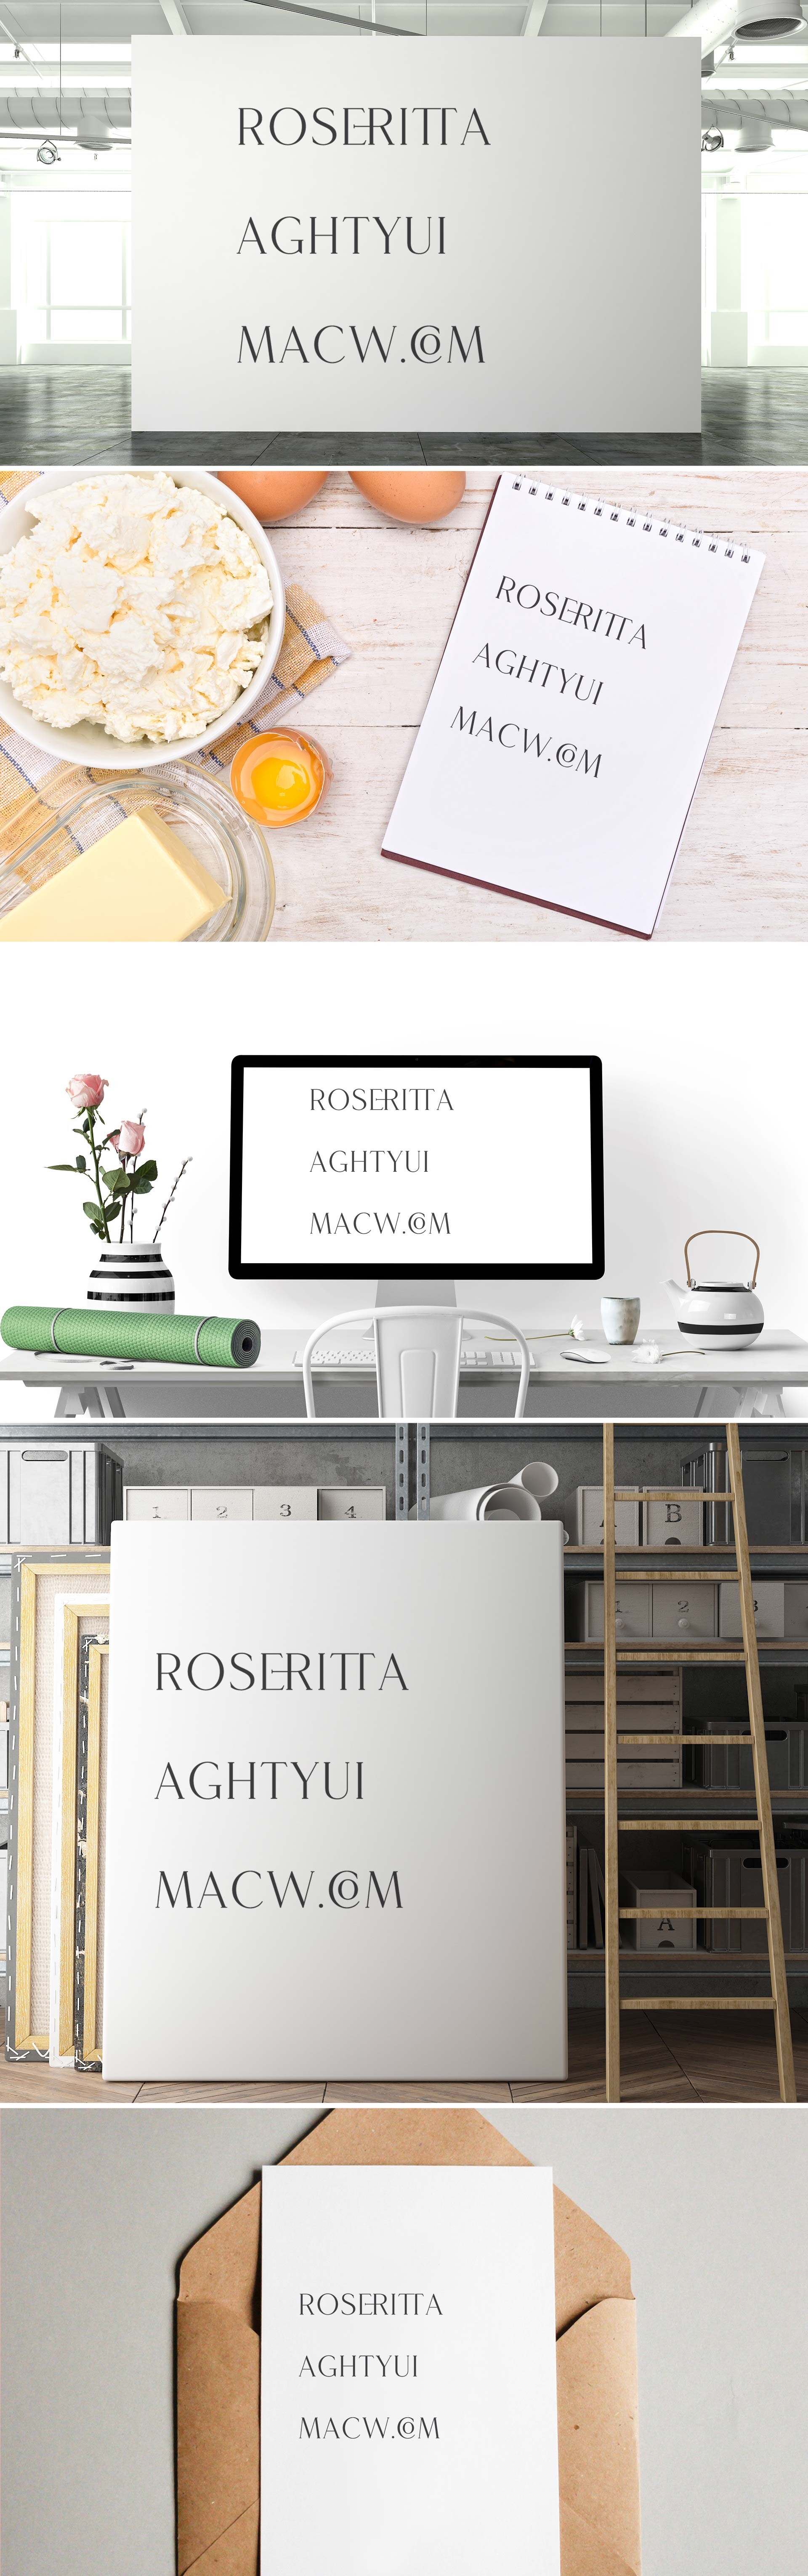 大写英文连笔衬线字体Roseritta Luxurious